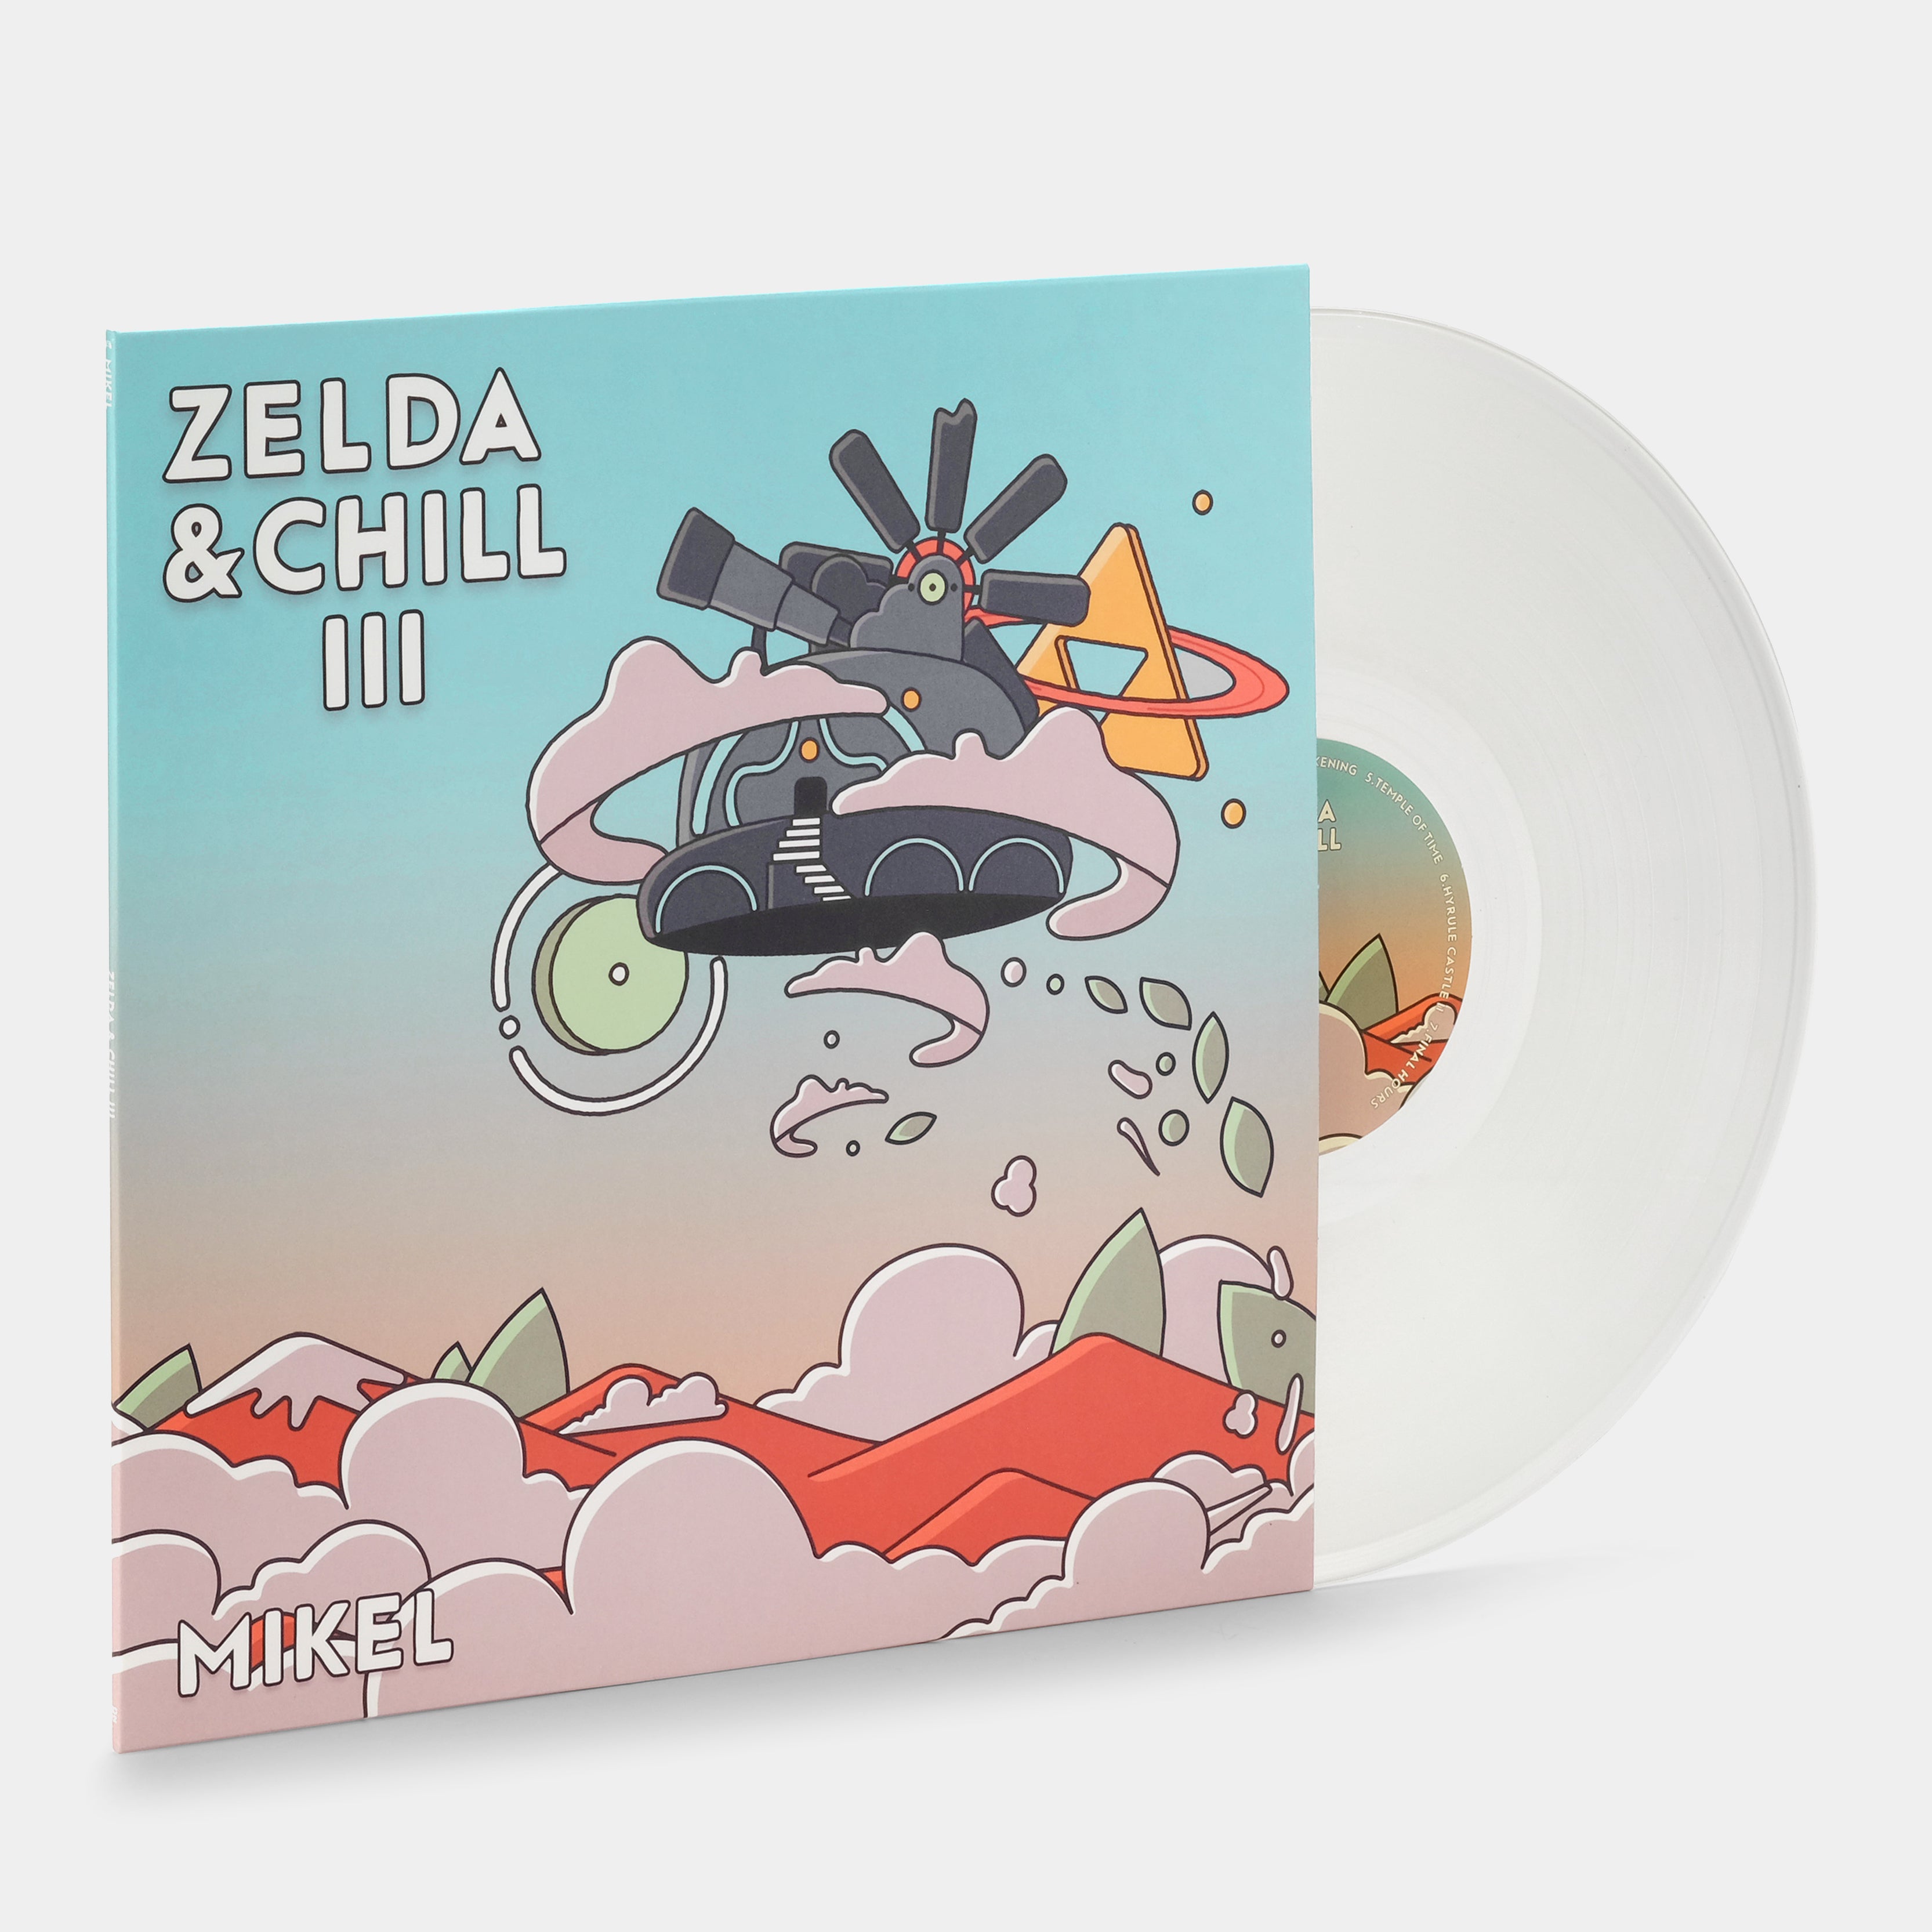 Mikel - Zelda & Chill III LP Clear Vinyl Record